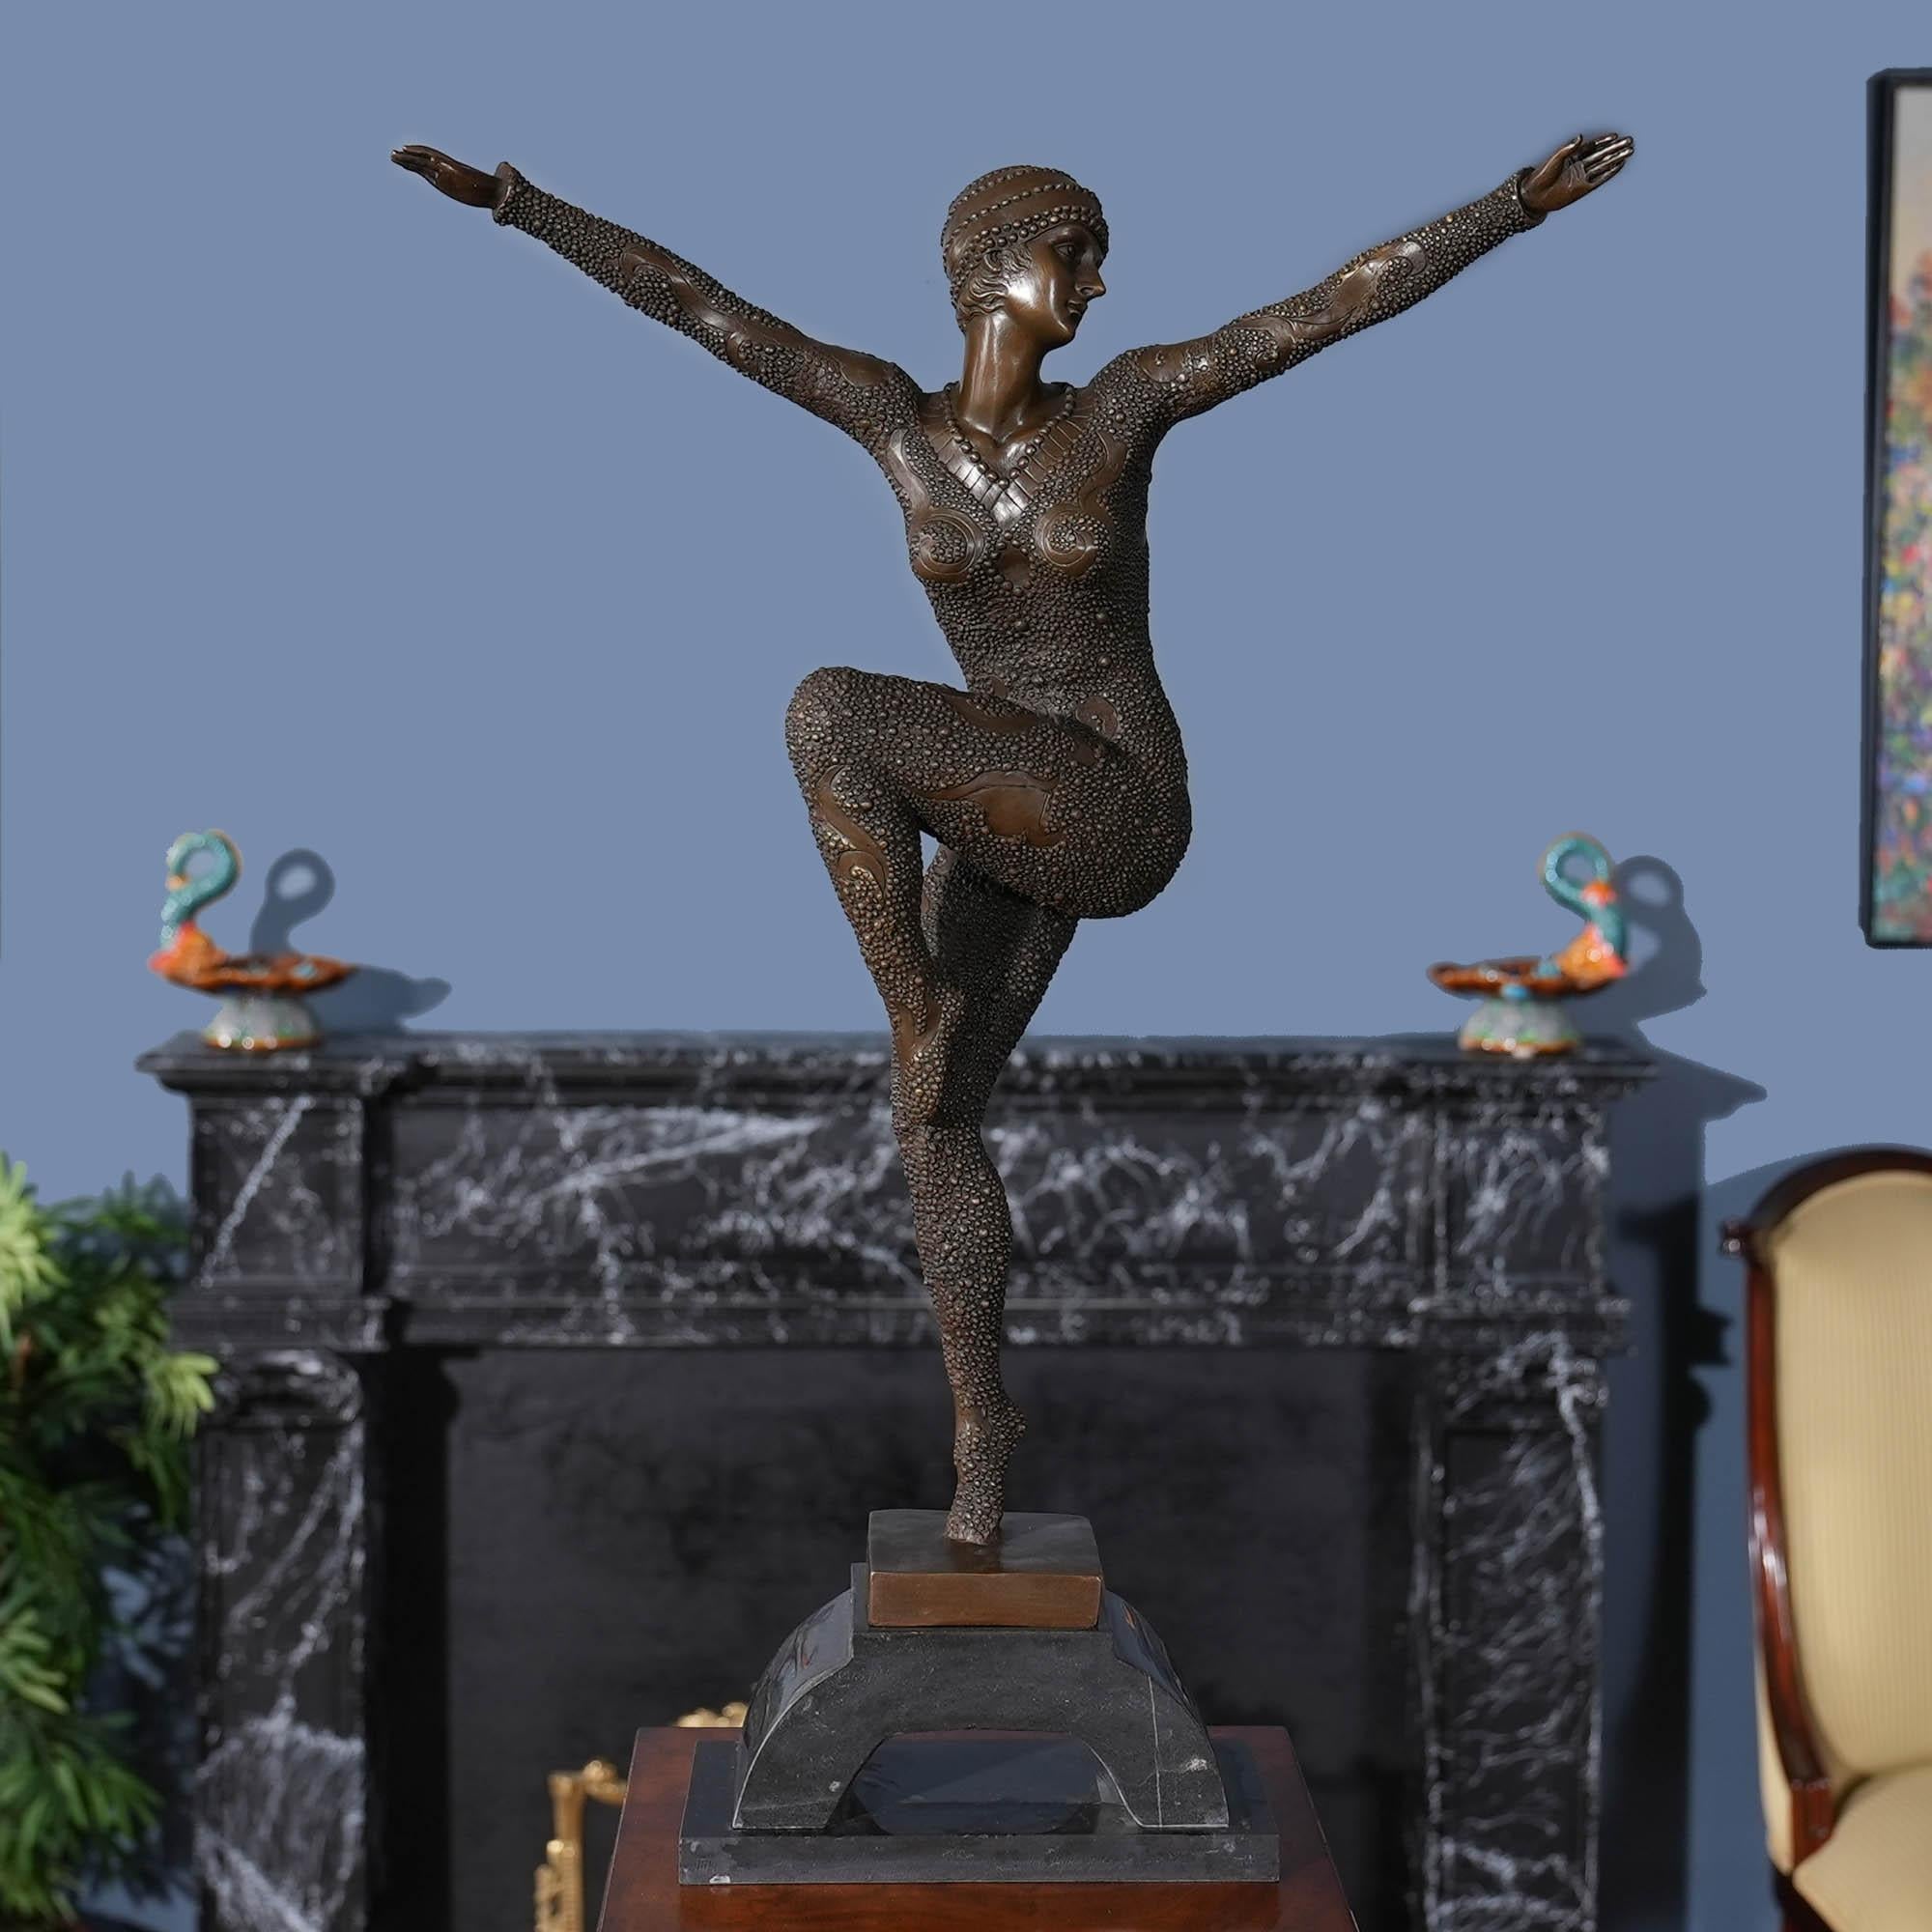 Die tanzende Frau mit Pailletten aus Bronze auf einem Marmorsockel ist selbst im Stillstand anmutig und passt in jede Umgebung. Die Bronzestatue der tanzenden Frau wurde im traditionellen Wachsausschmelzverfahren gegossen und mit handgearbeiteten